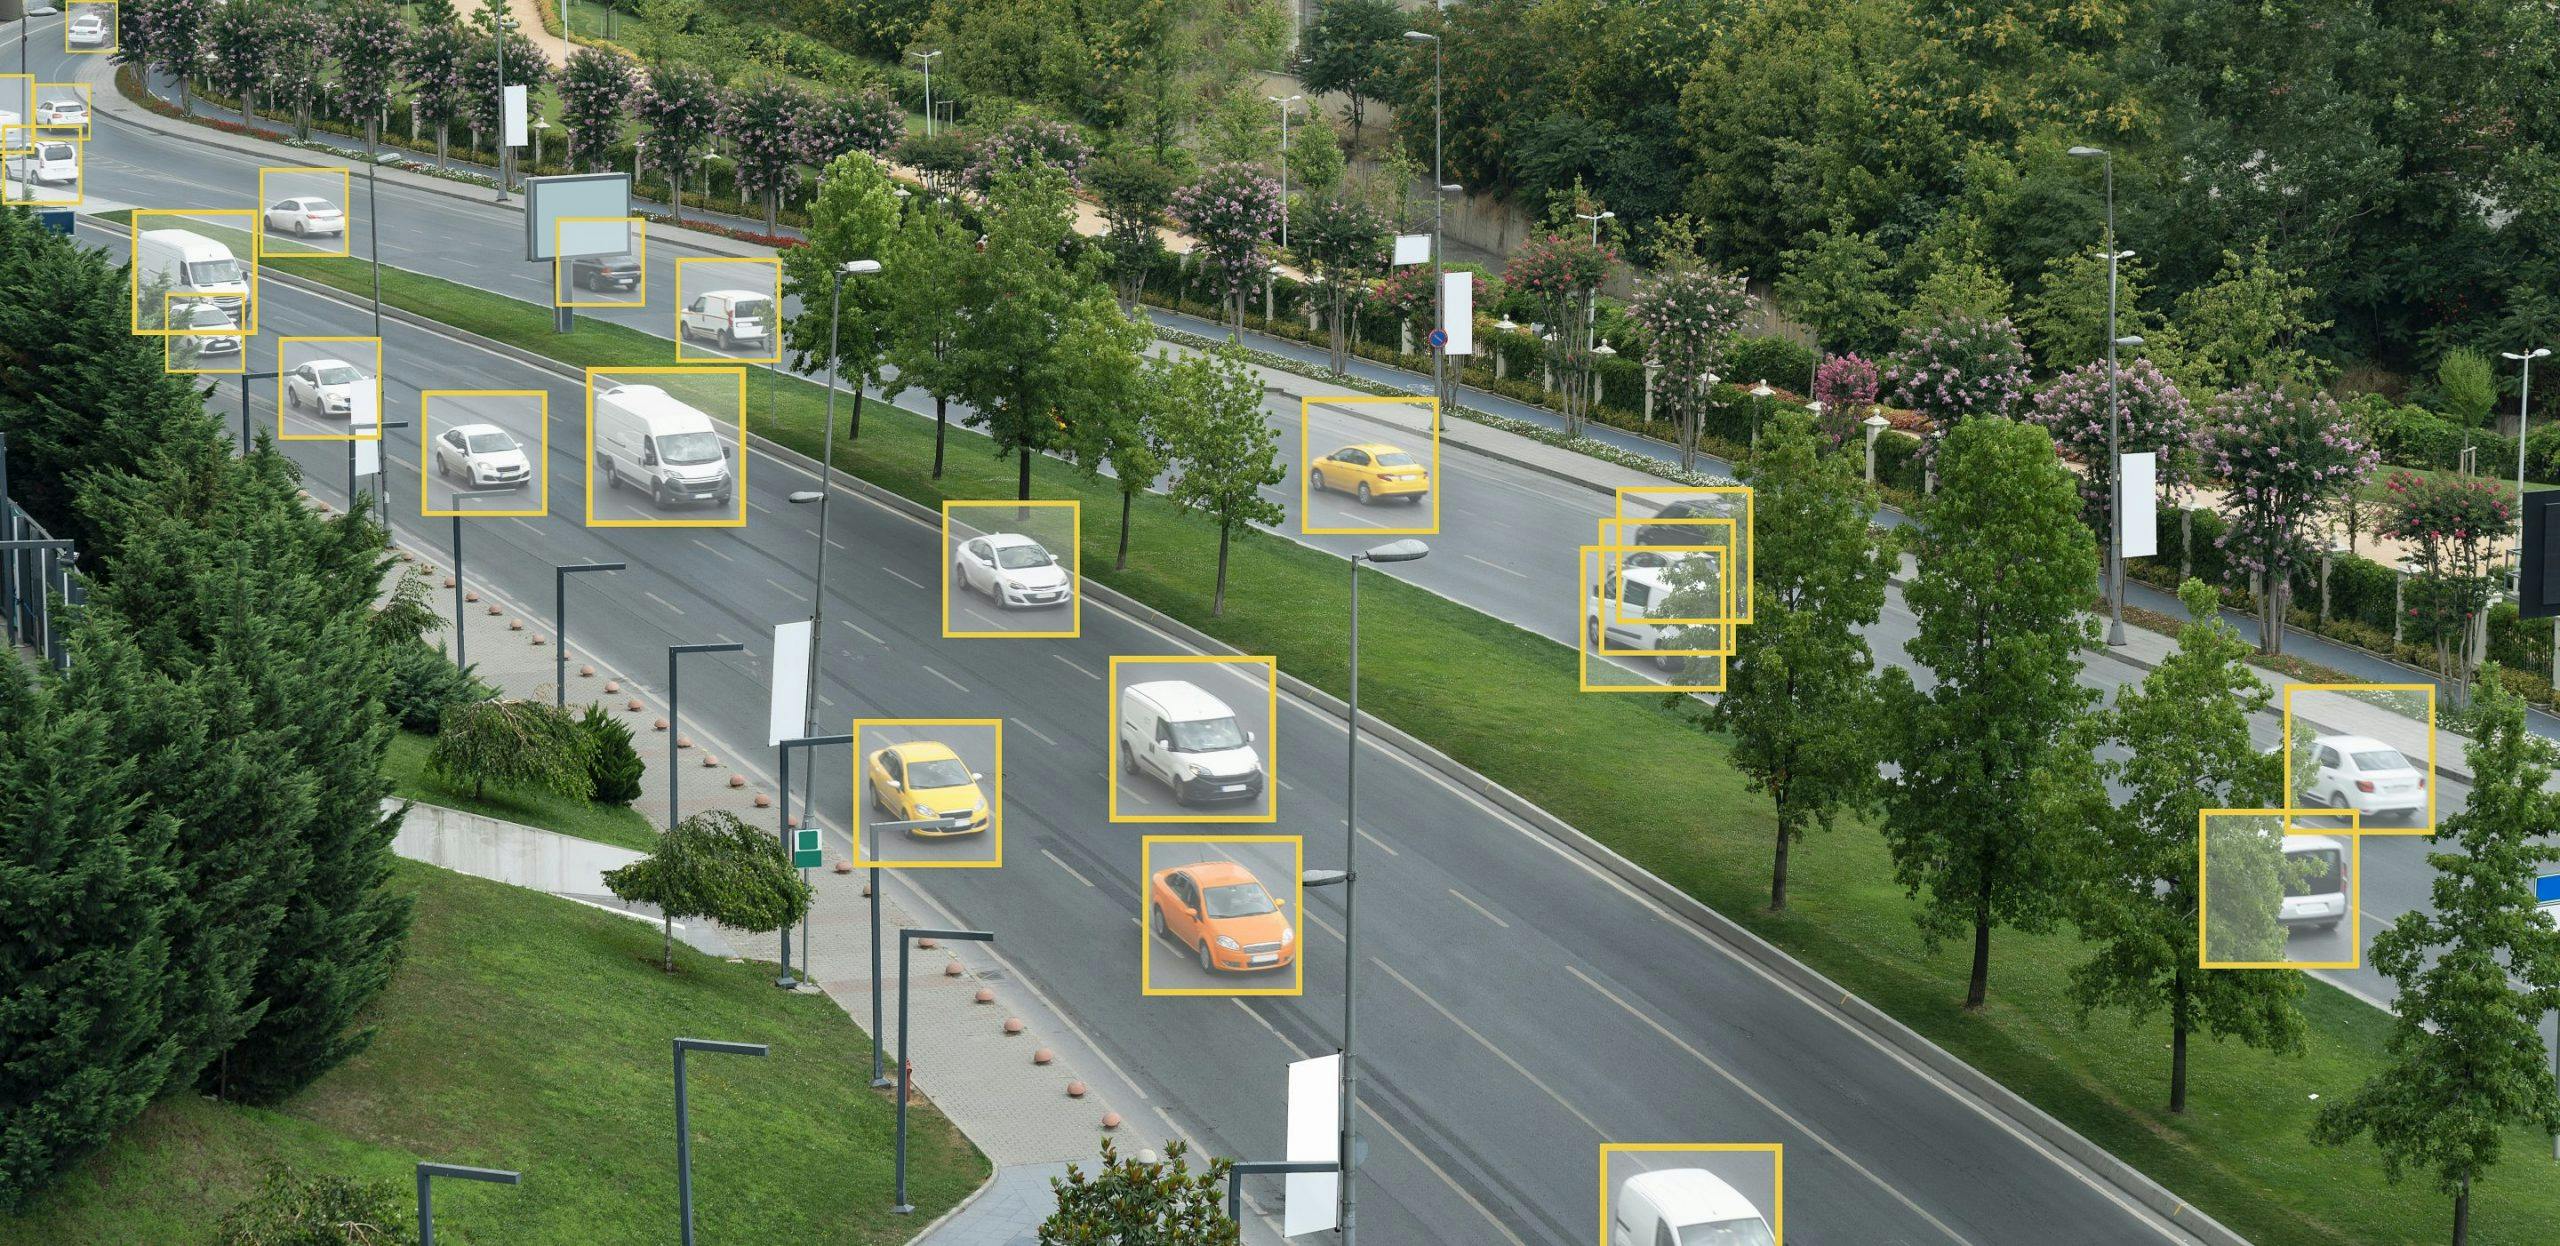 voitures dans une rocade avec des "bounding boxes" detectés para un system de Computer Vision